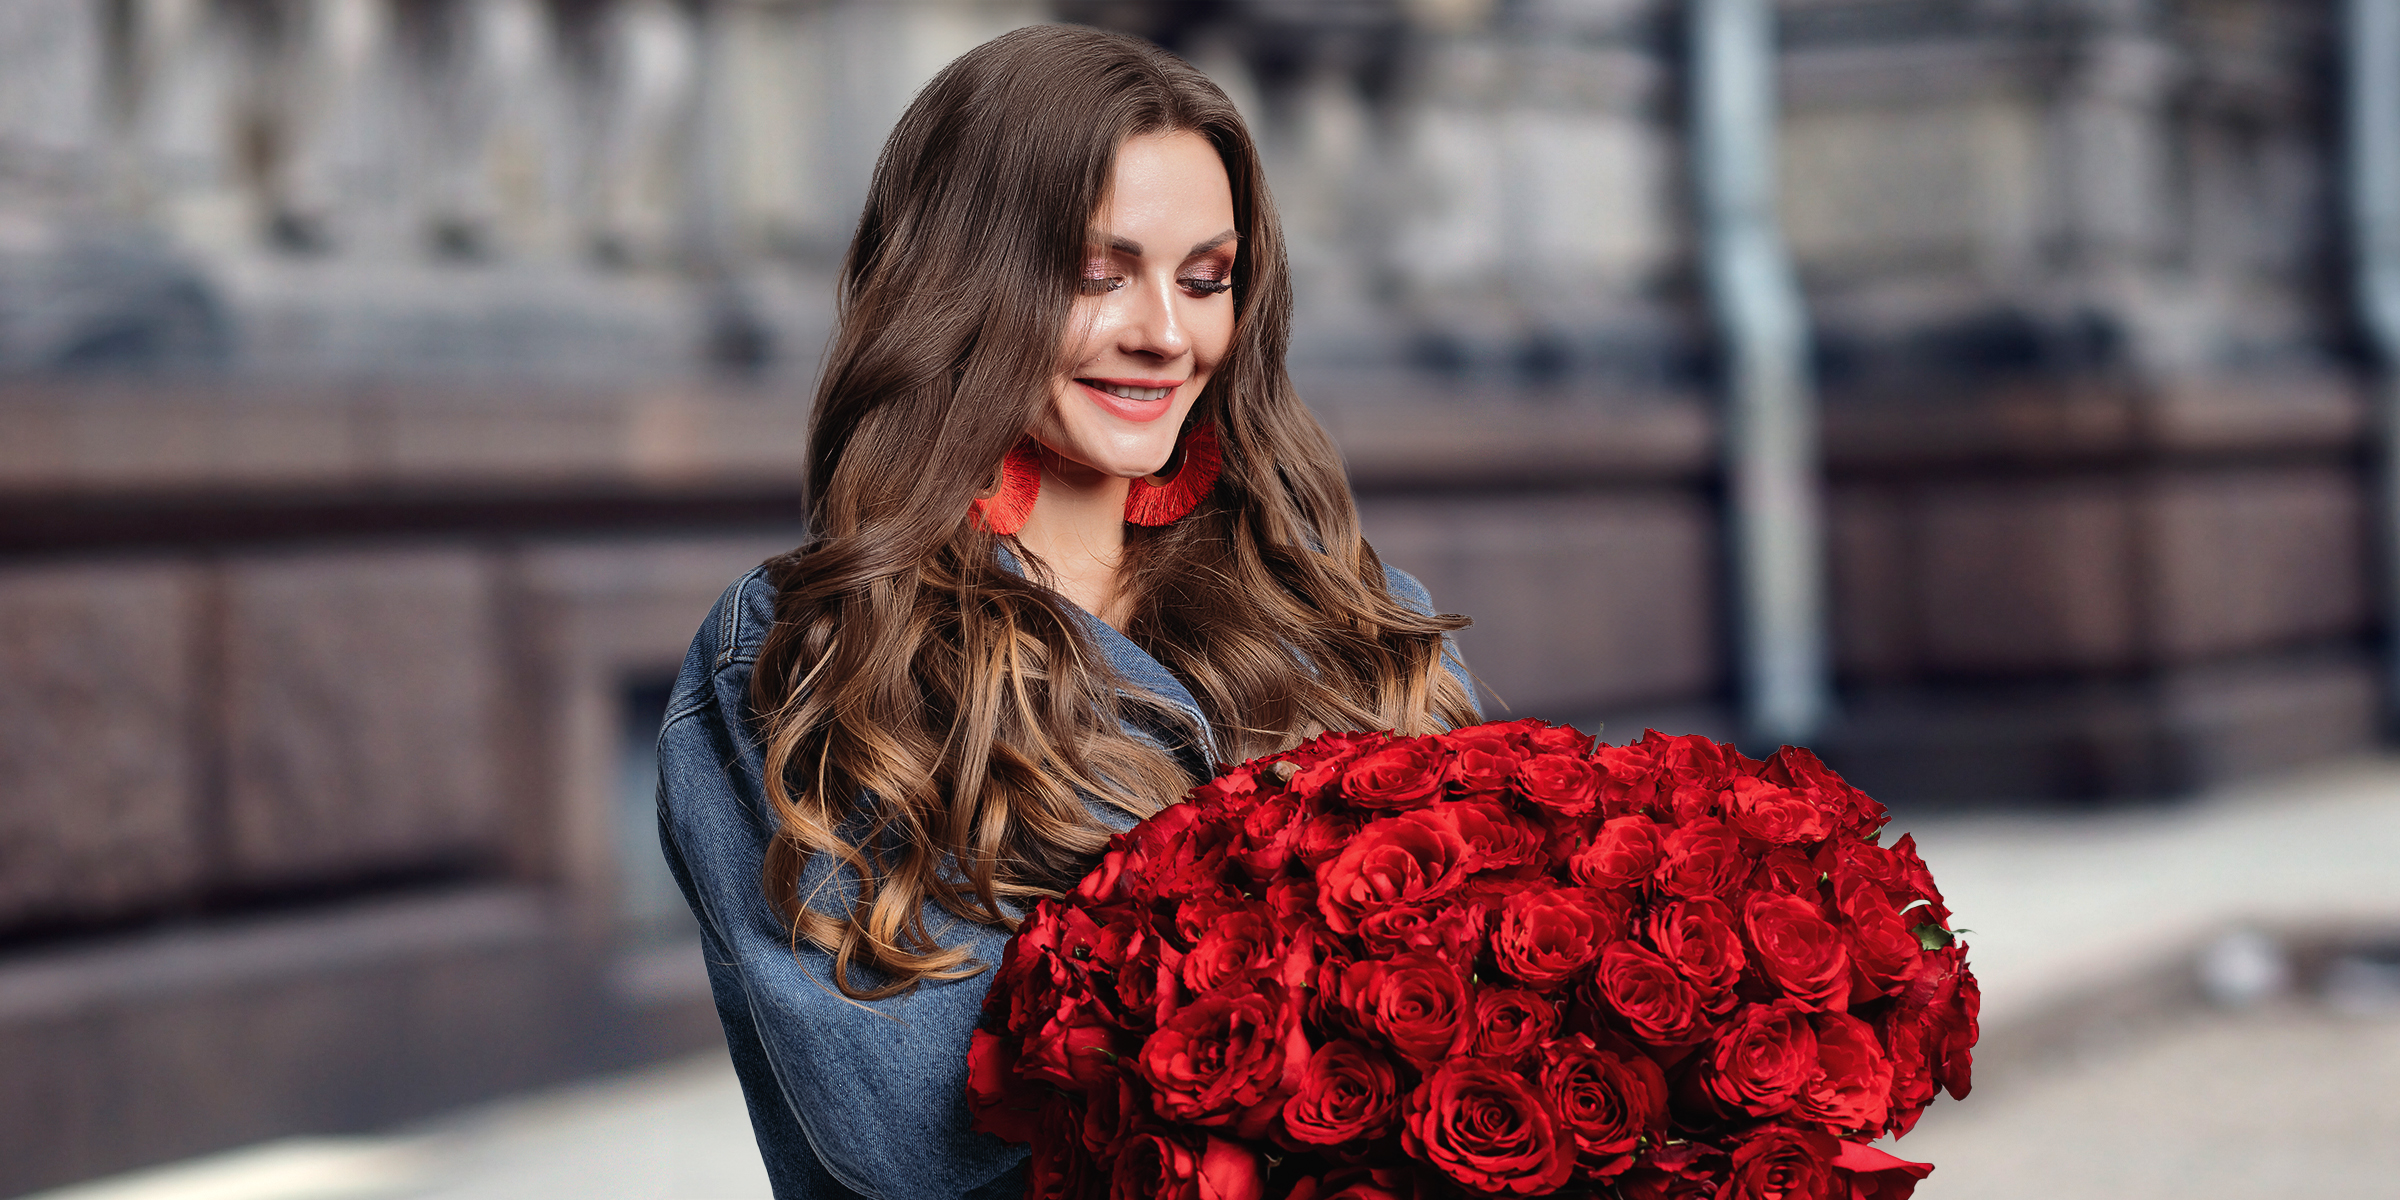 Une femme heureuse tenant un bouquet de roses rouges | Source : Shutterstock